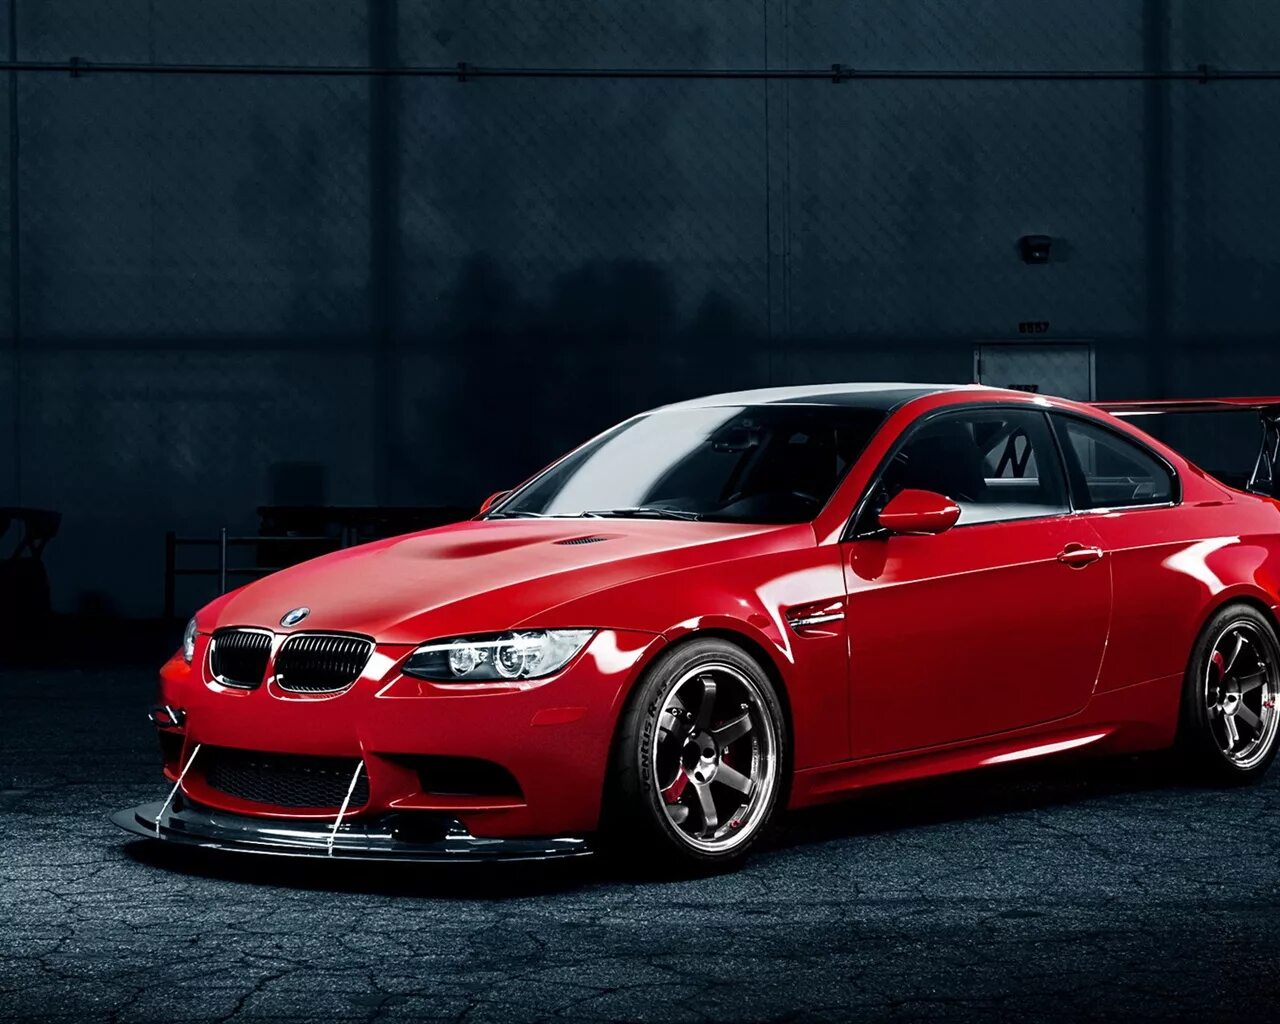 3 m ф ф. BMW m3 Red. BMW 3 Red. BMW m3 спорт. БМВ 3 красная.